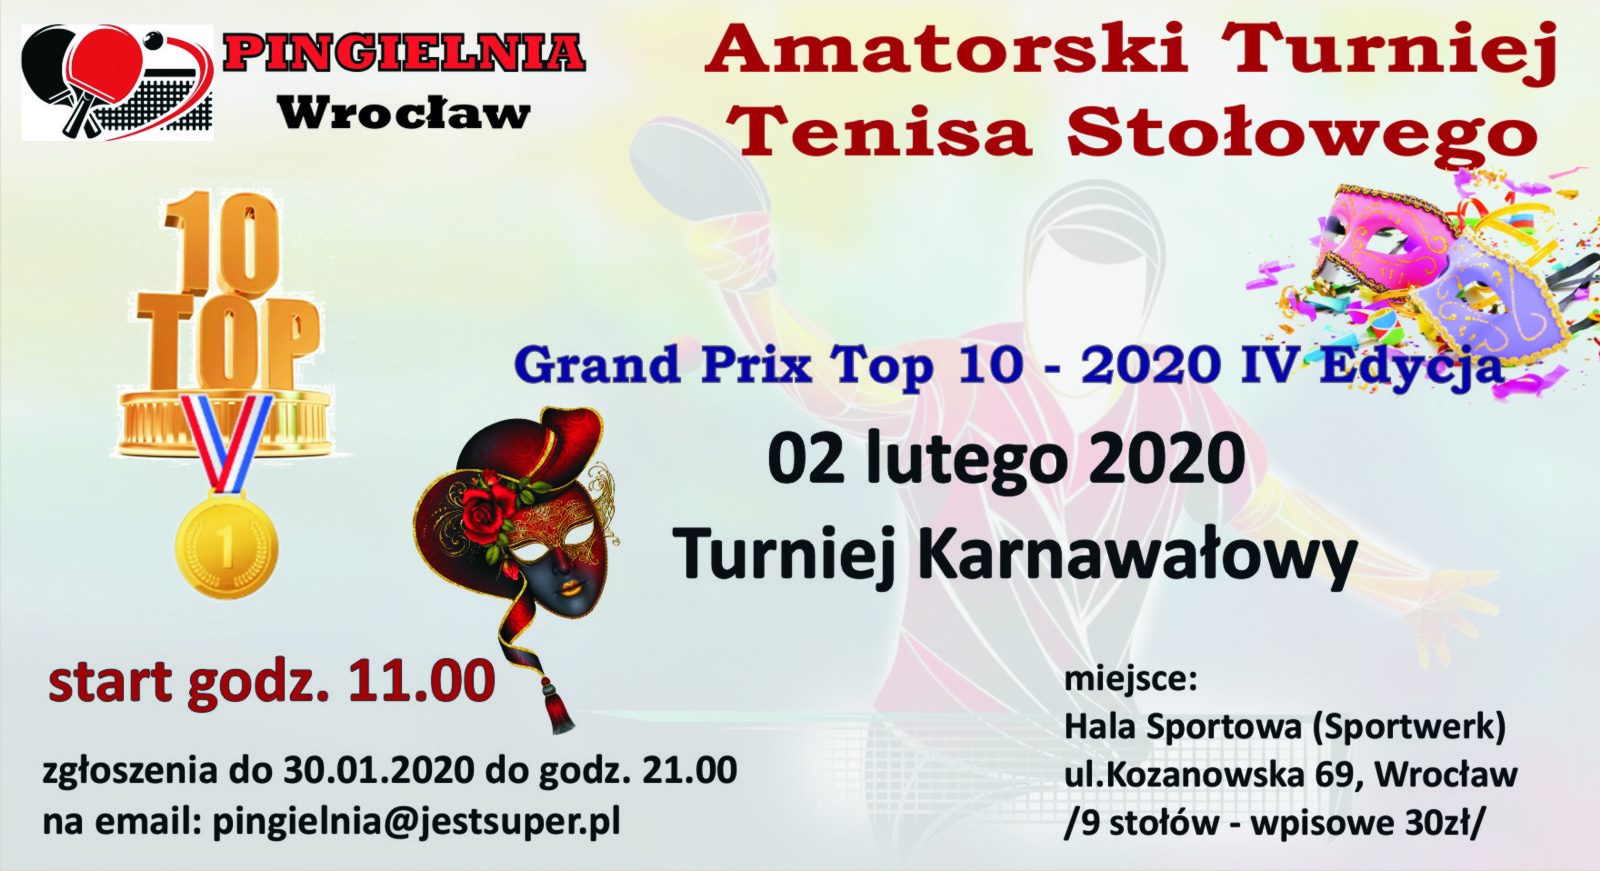 Plakat turnieju Amatorski Turniej Tenisa Stołowego (Pingielnia)